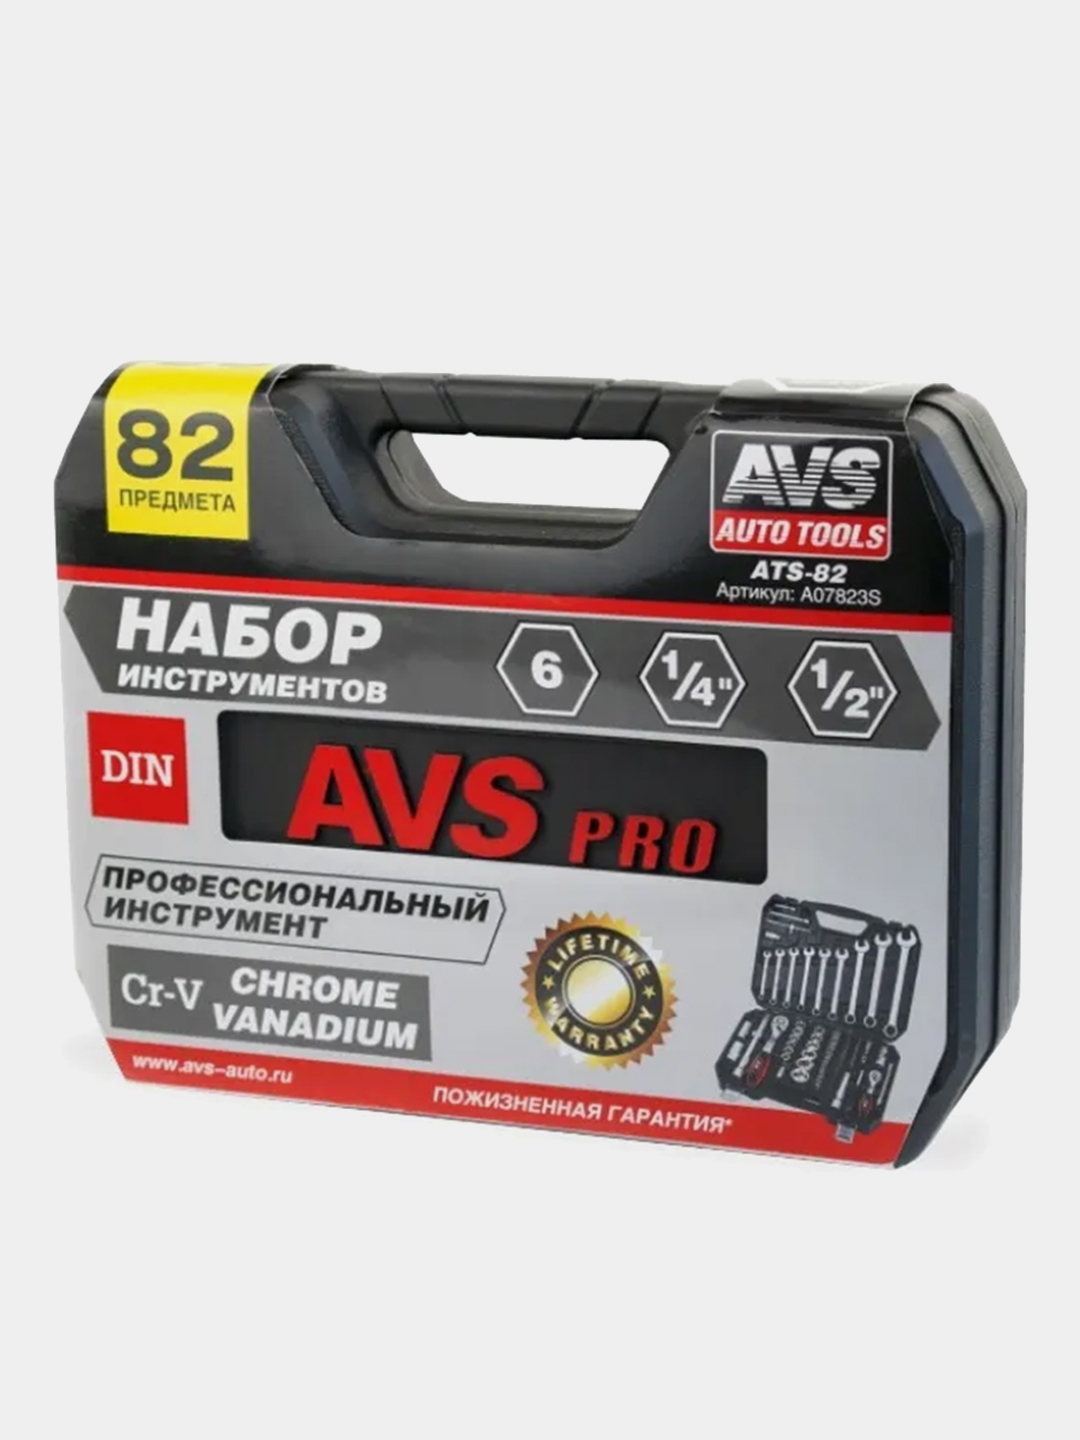  инструментов для автомобиля 82 предмета AVS ATS-82 за 5913 .